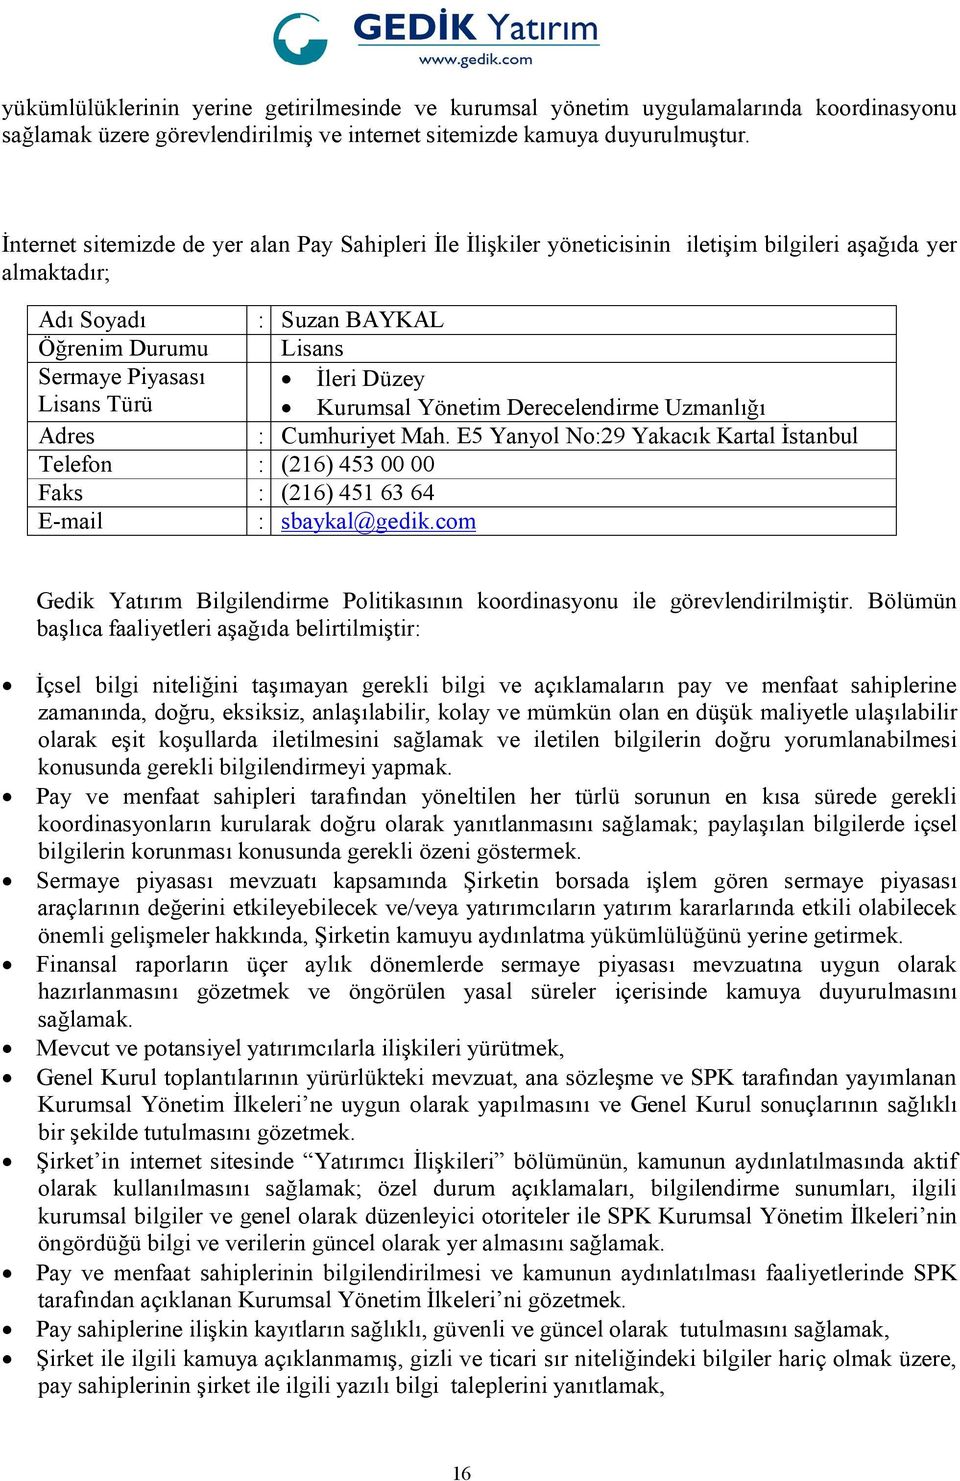 Düzey Kurumsal Yönetim Derecelendirme Uzmanlığı Adres : Cumhuriyet Mah. E5 Yanyol No:29 Yakacık Kartal İstanbul Telefon : (216) 453 00 00 Faks : (216) 451 63 64 E-mail : sbaykal@gedik.